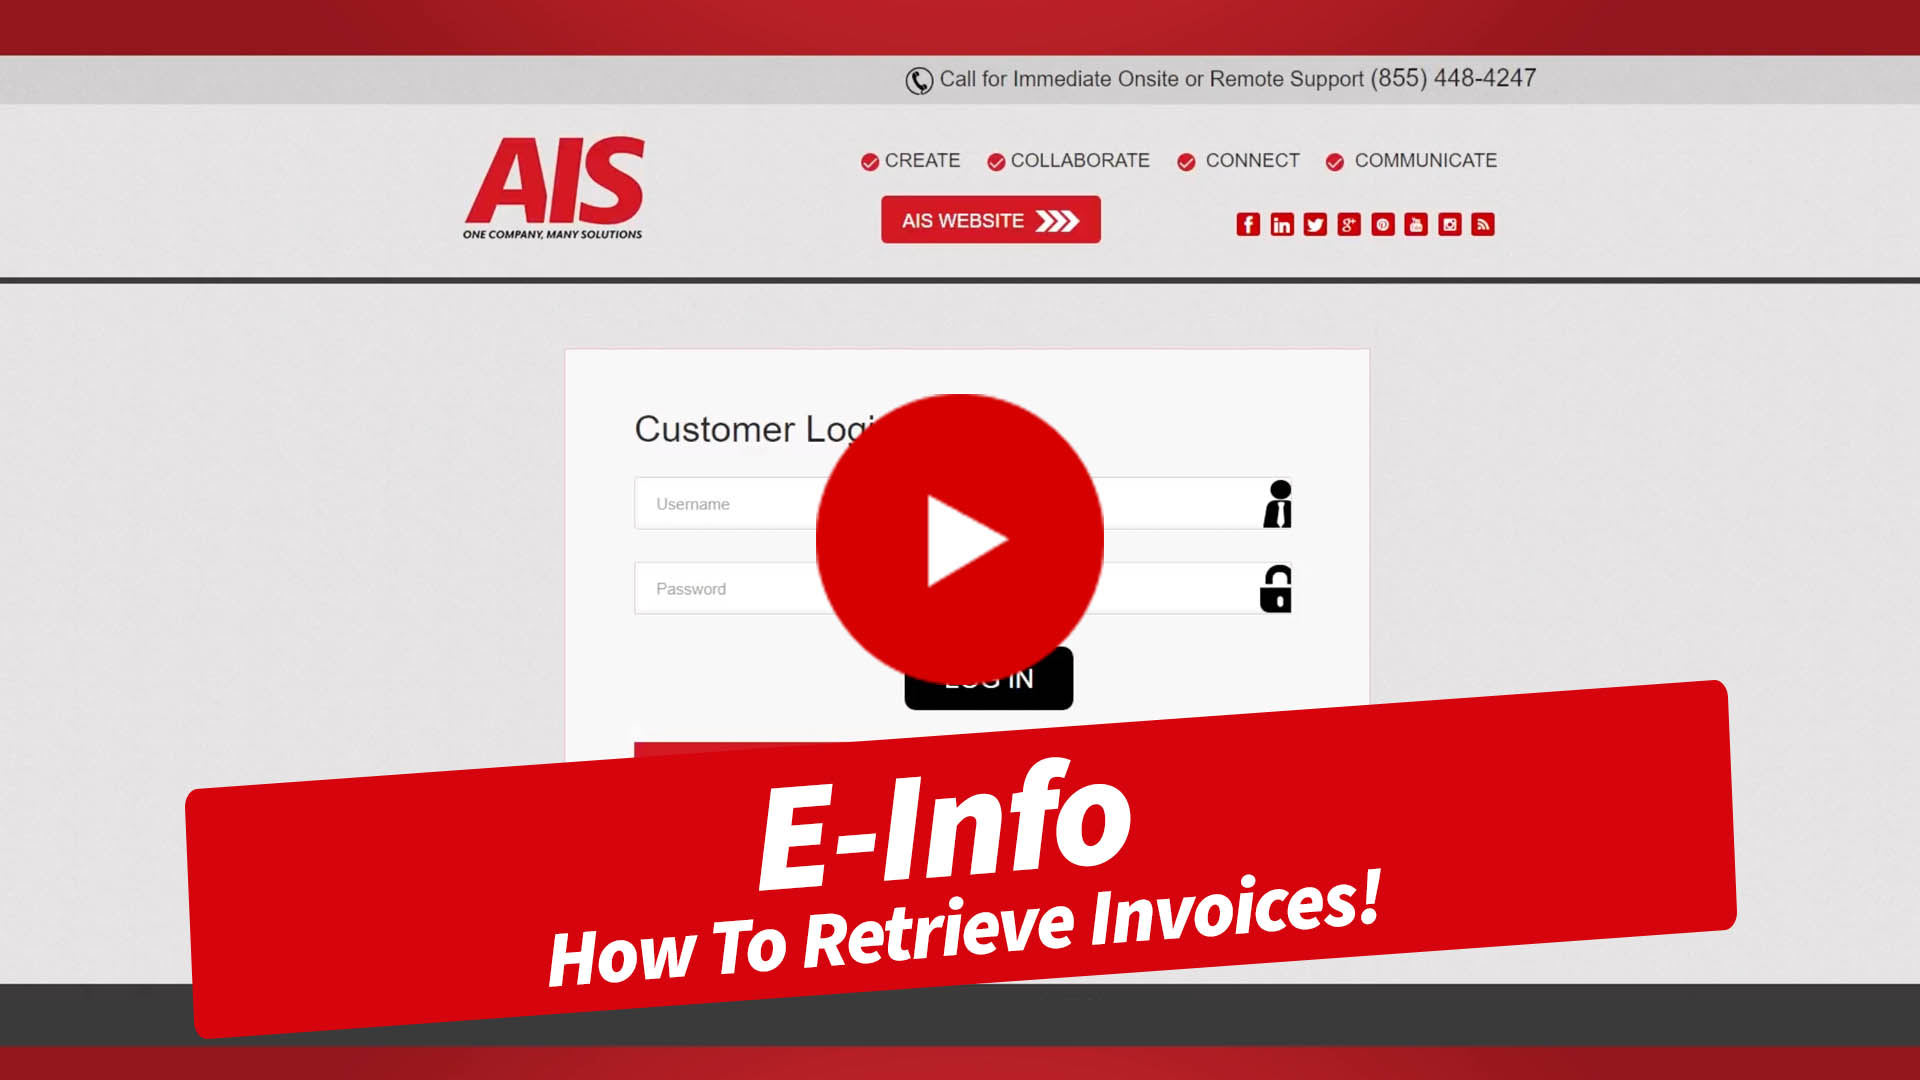 E-Info How To Retrieve Invoices